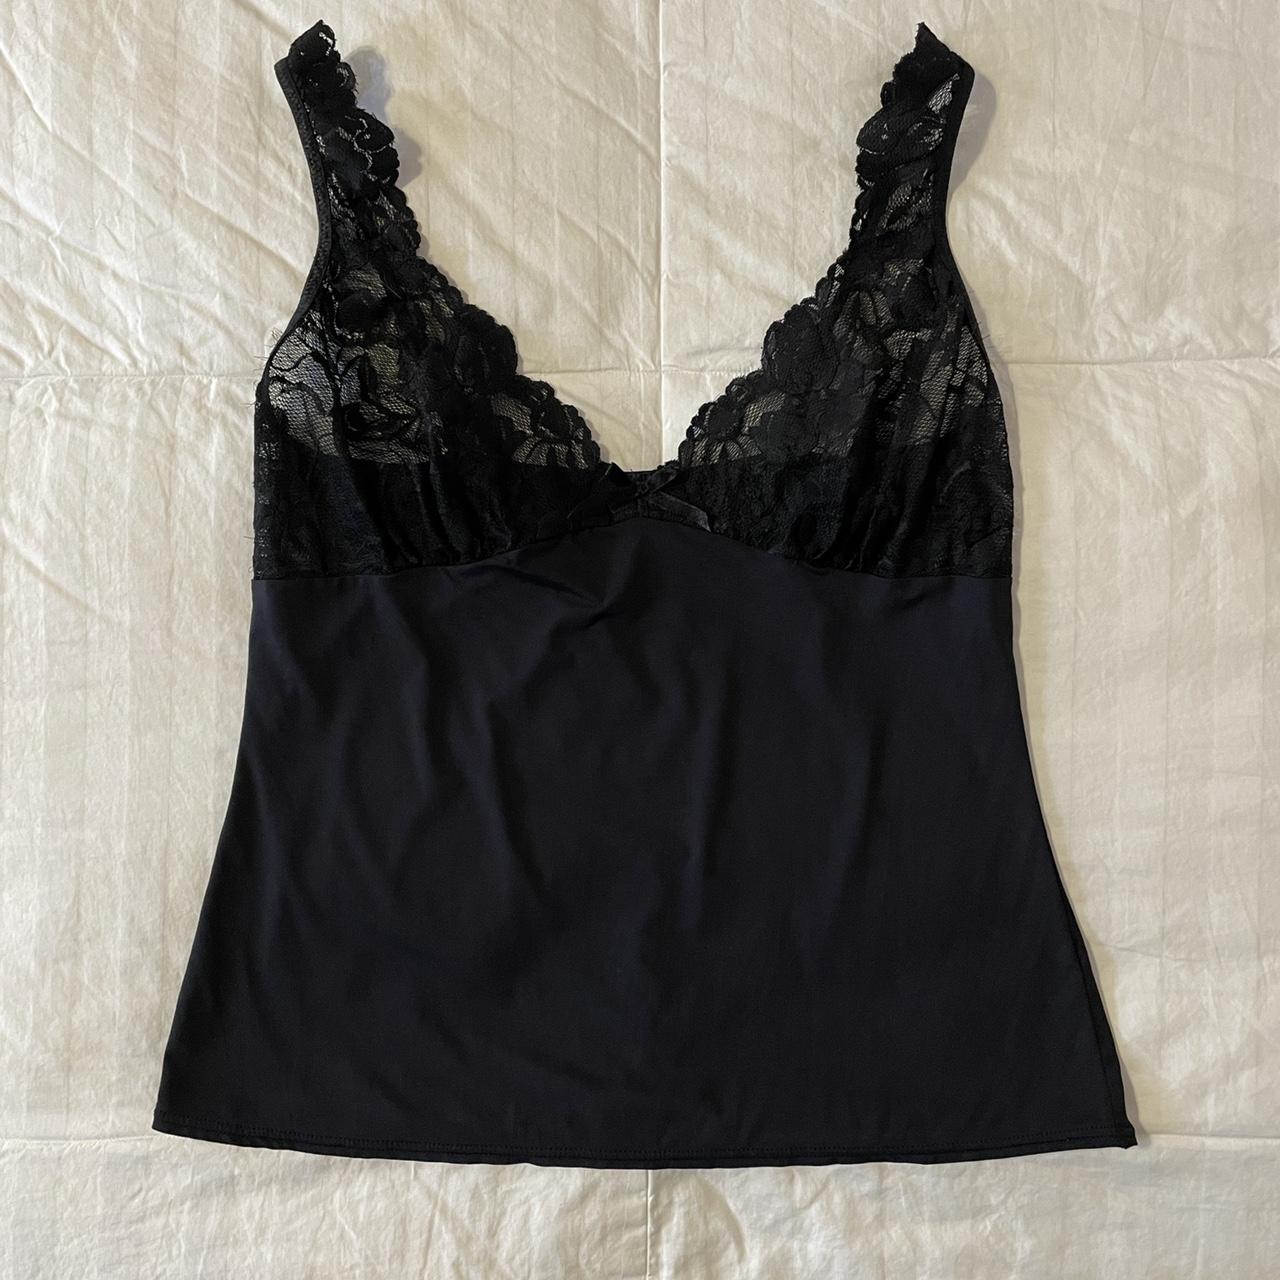 LACY BLACK SLIP CAMI • gorgeous black cami lingerie... - Depop